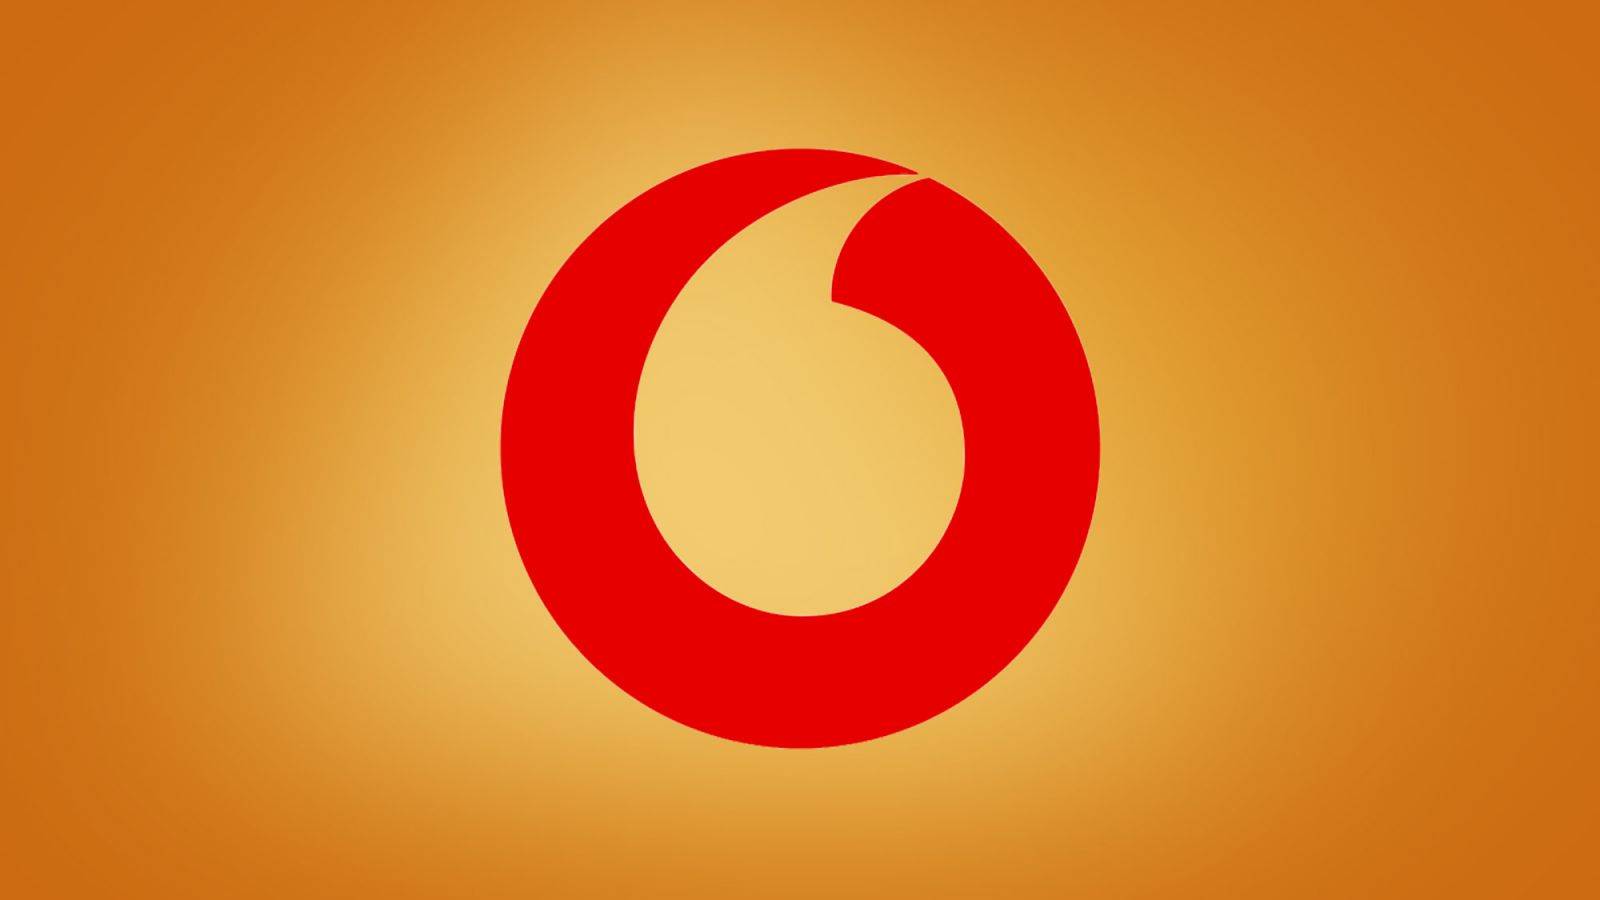 Vodafone: Telefoanele cu Reducerile MARI de Mos Nicolae in Romania